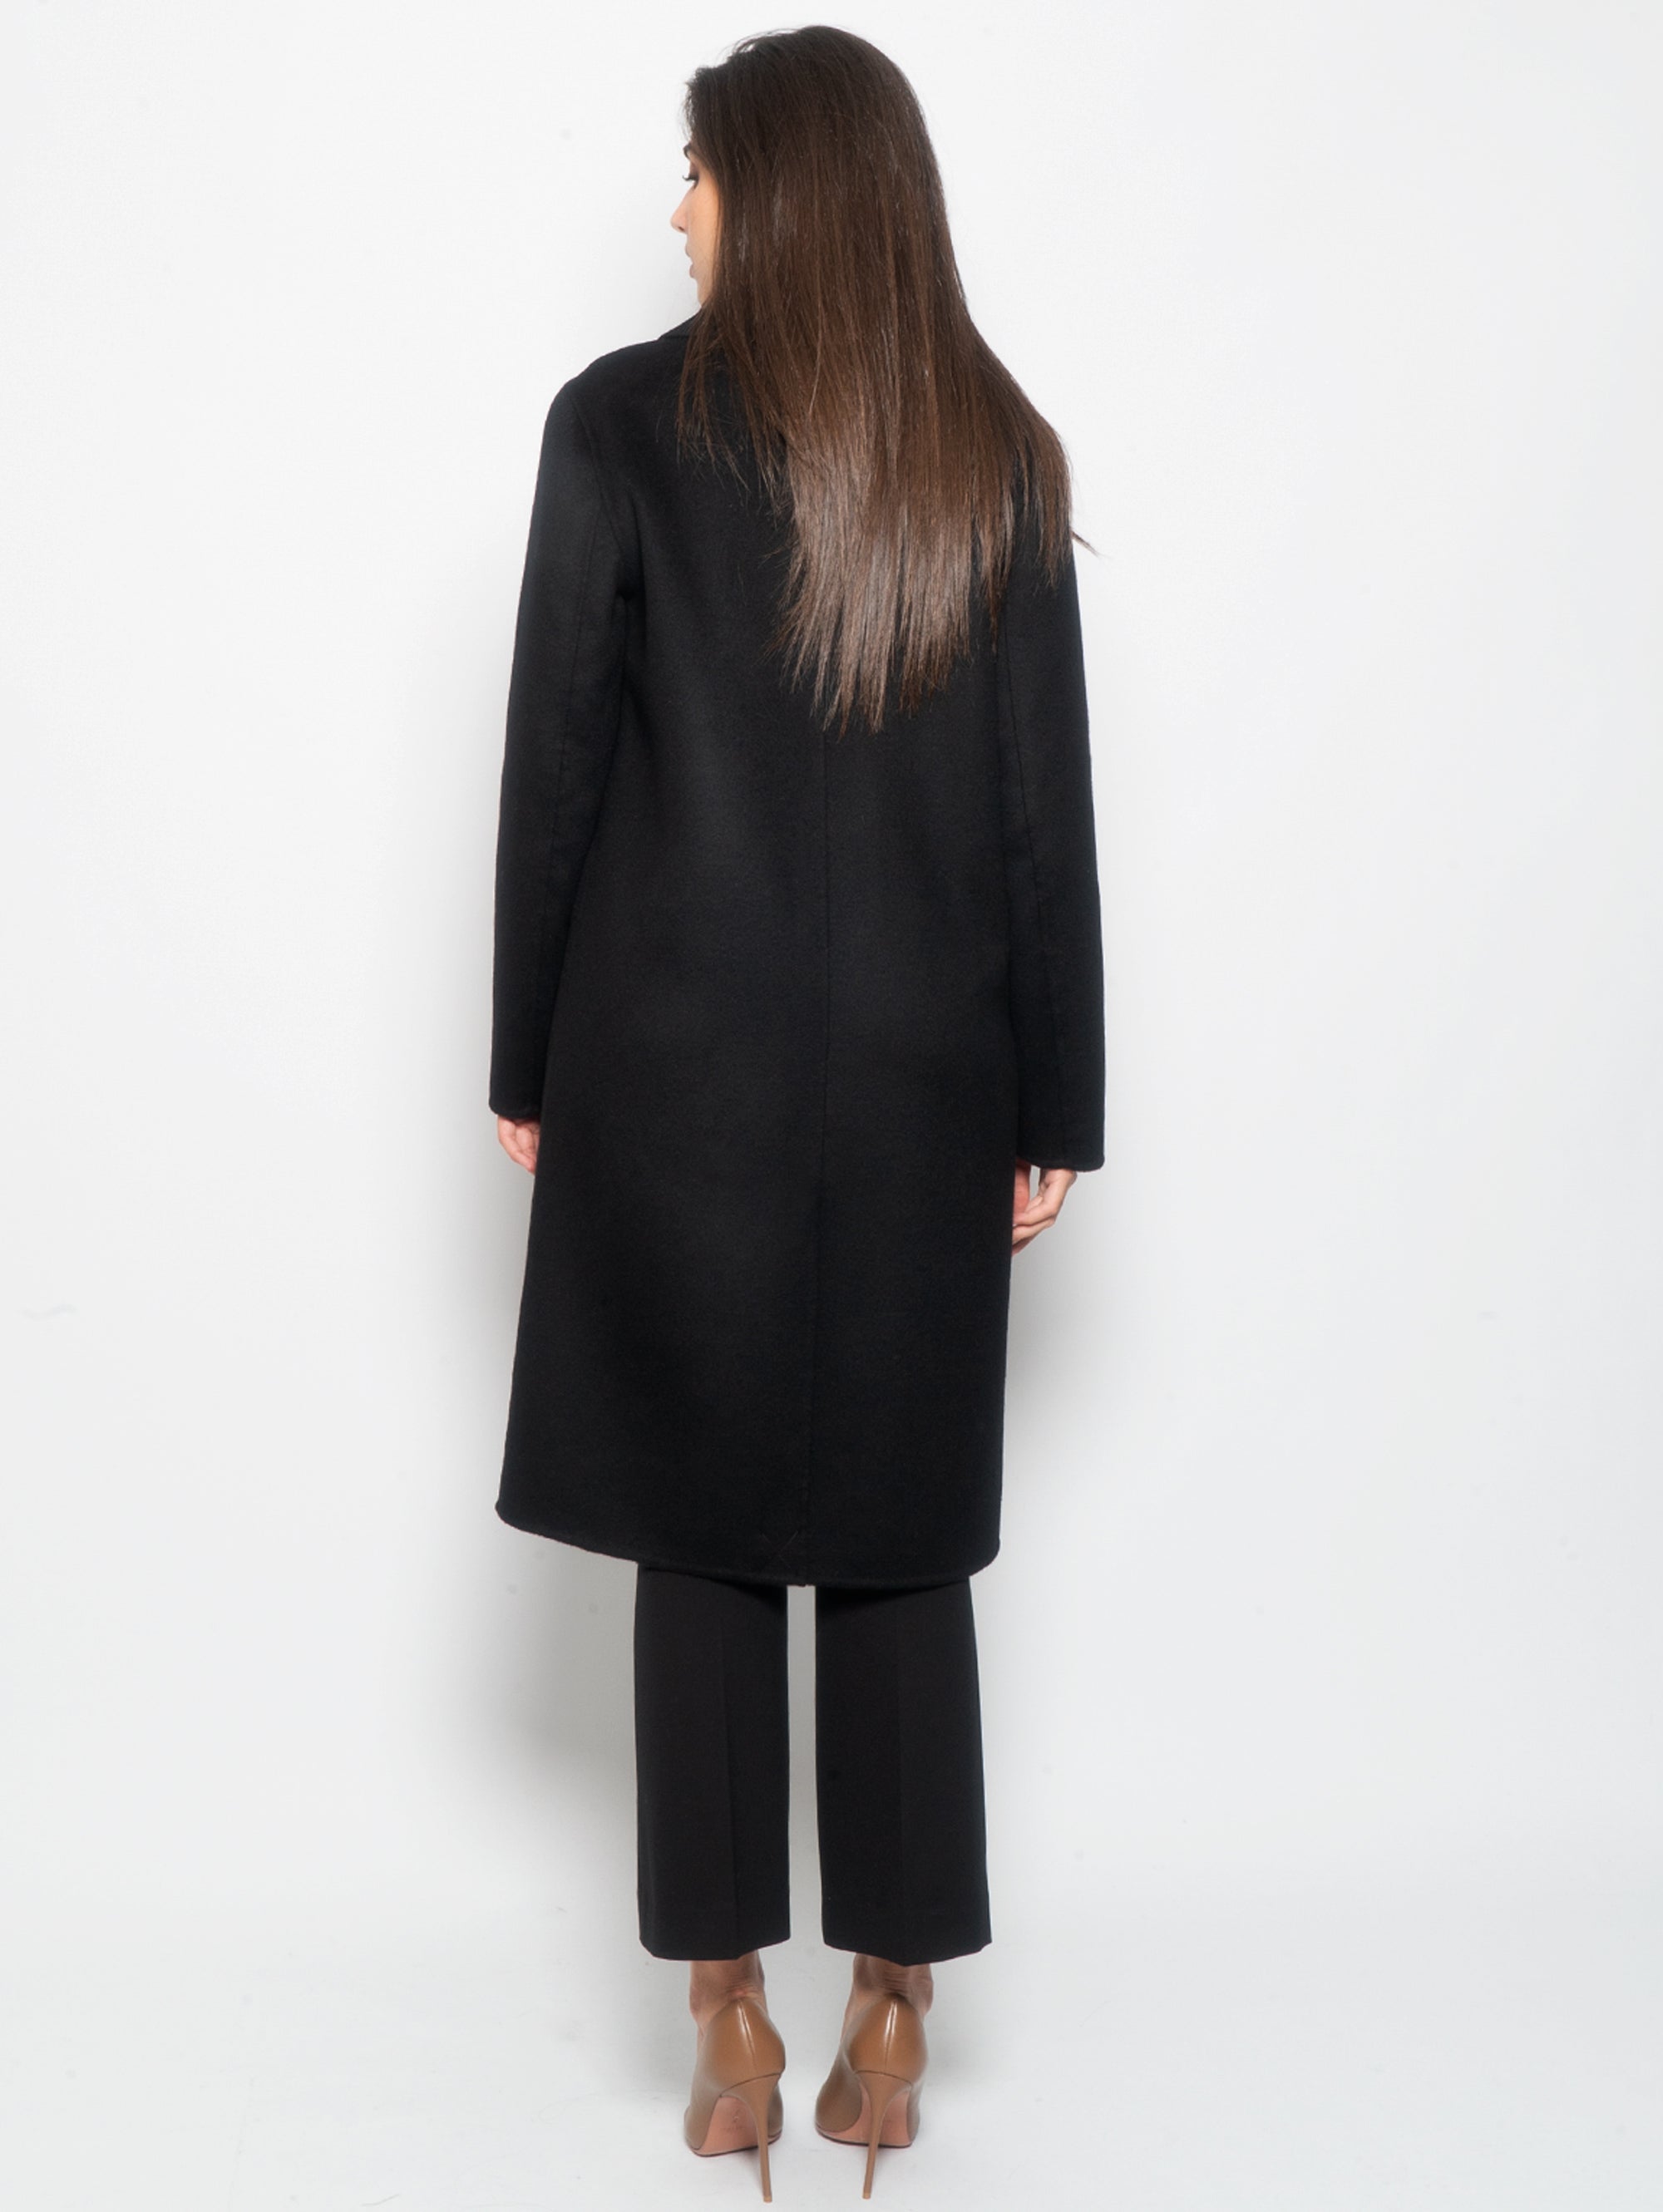 Einreihiger Mantel aus schwarzer Wolle